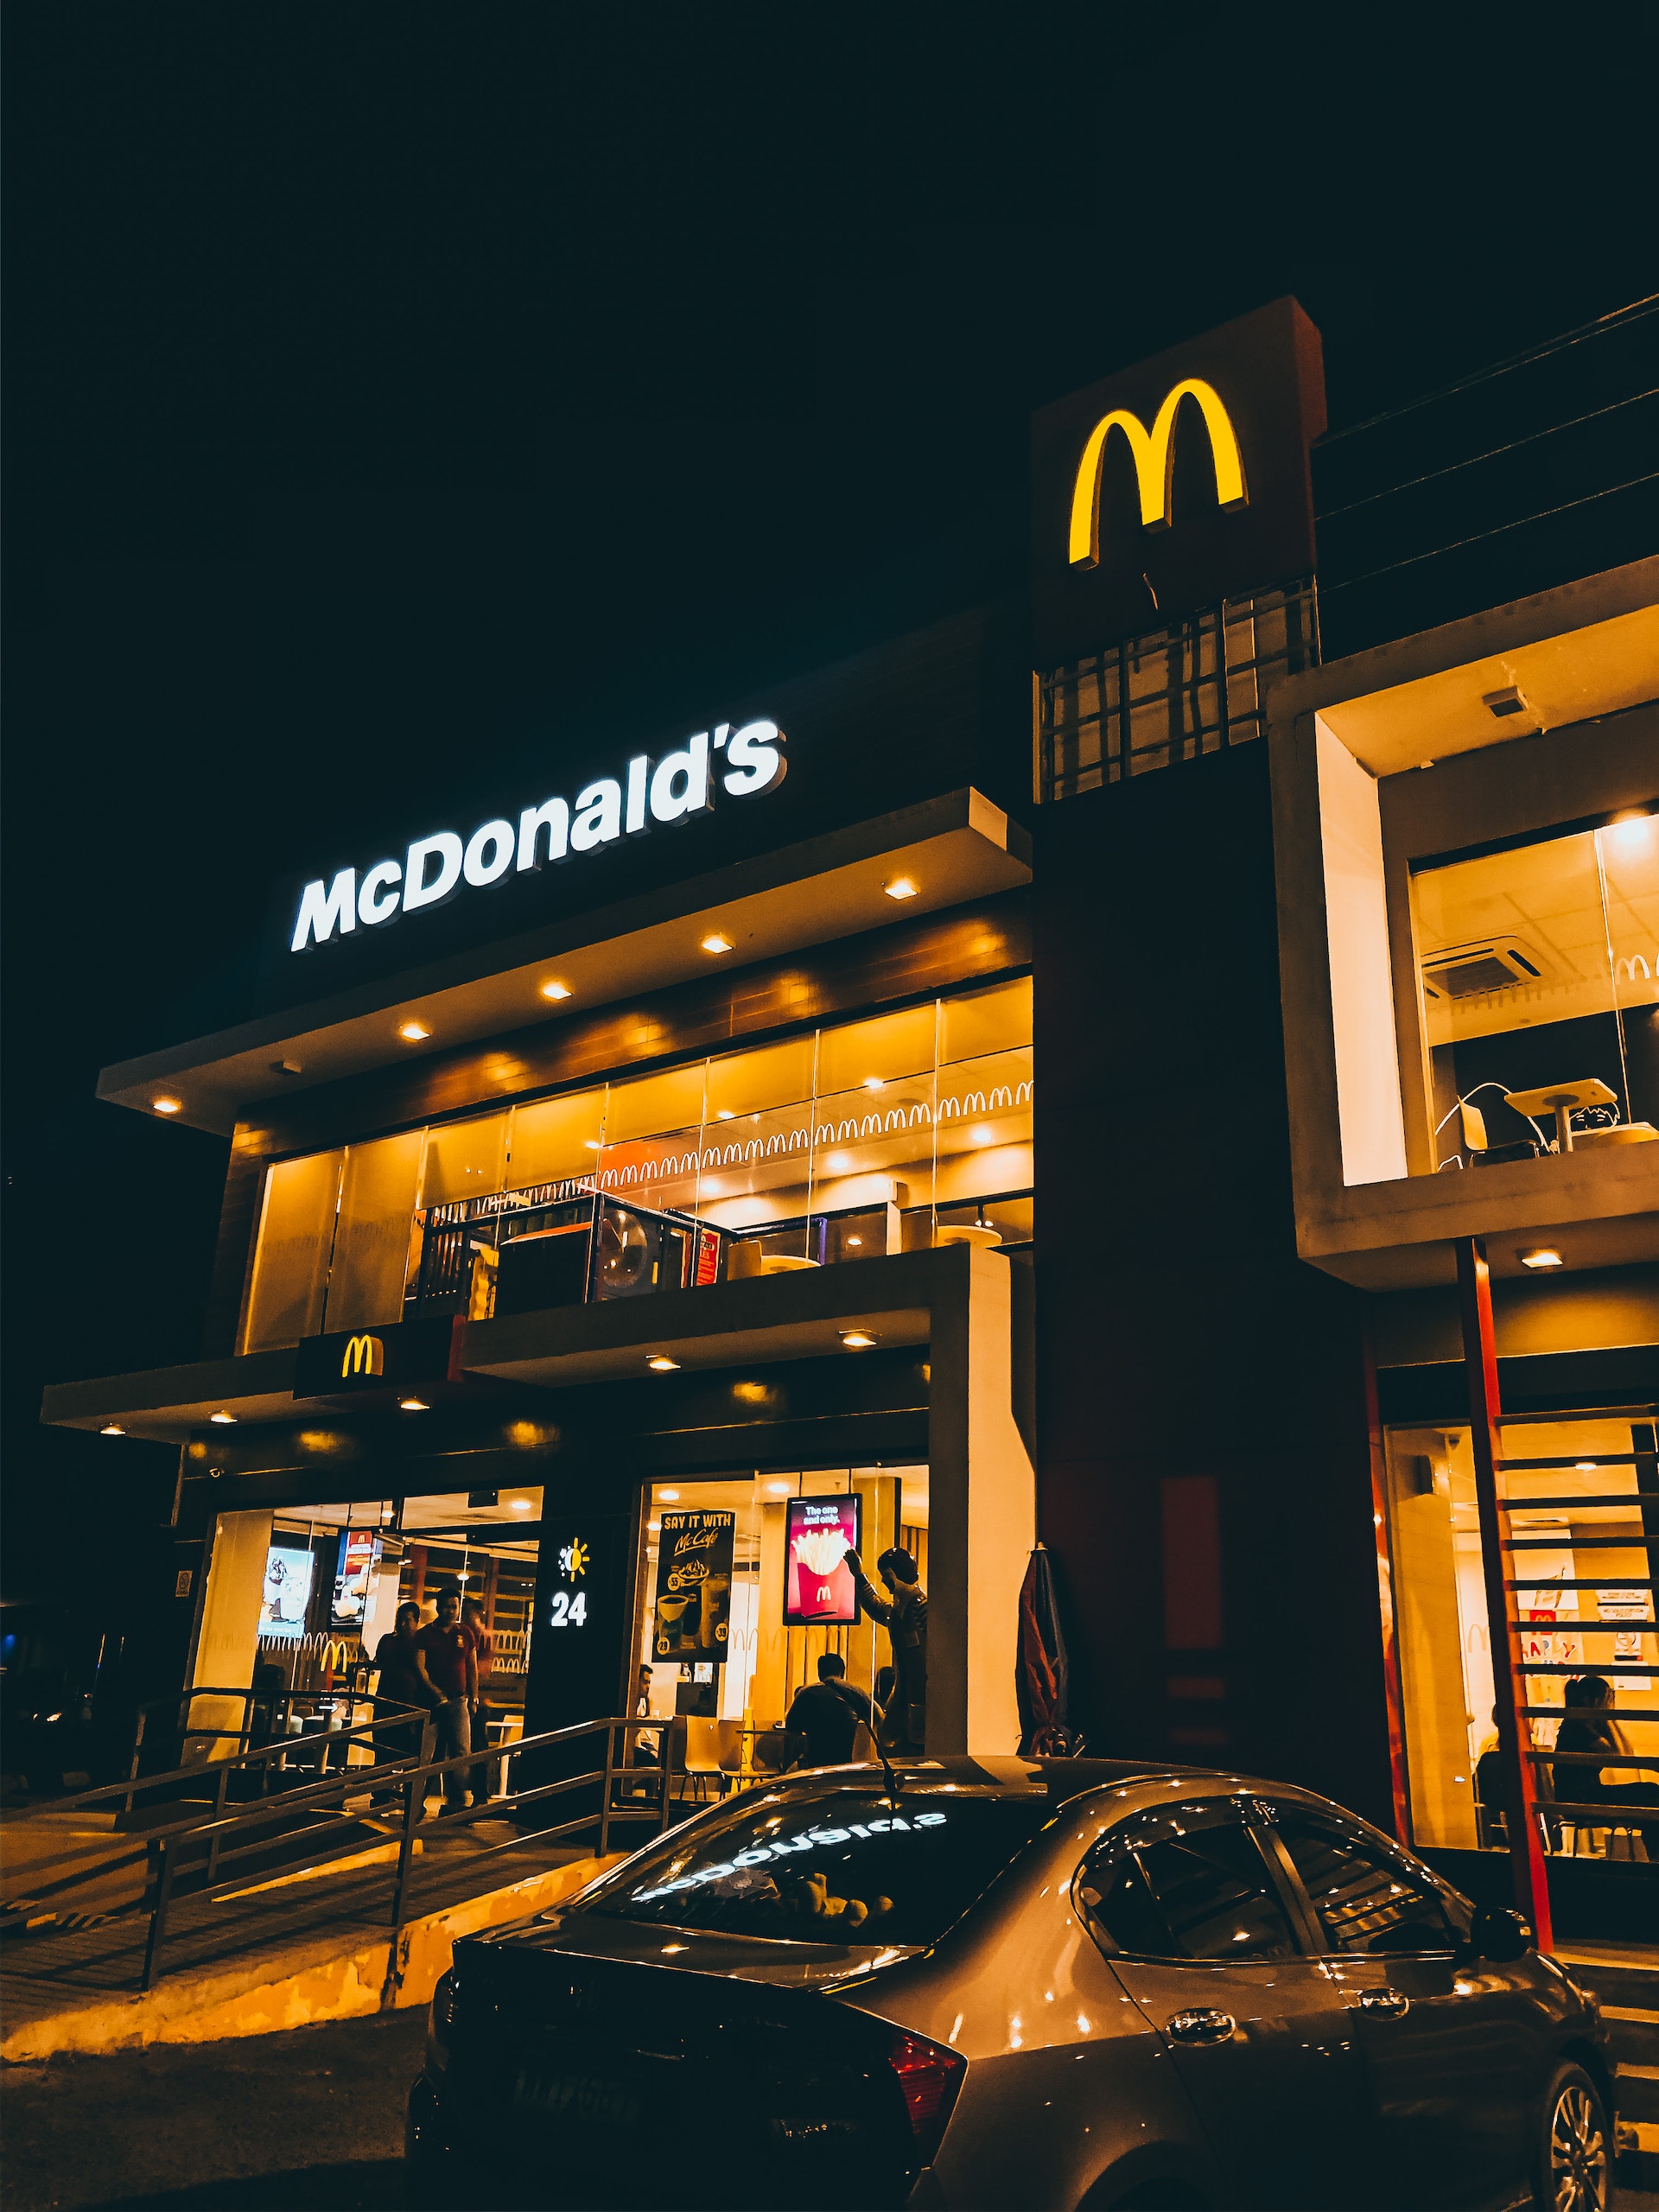 A McDonald's restaurant | Source: Pexels